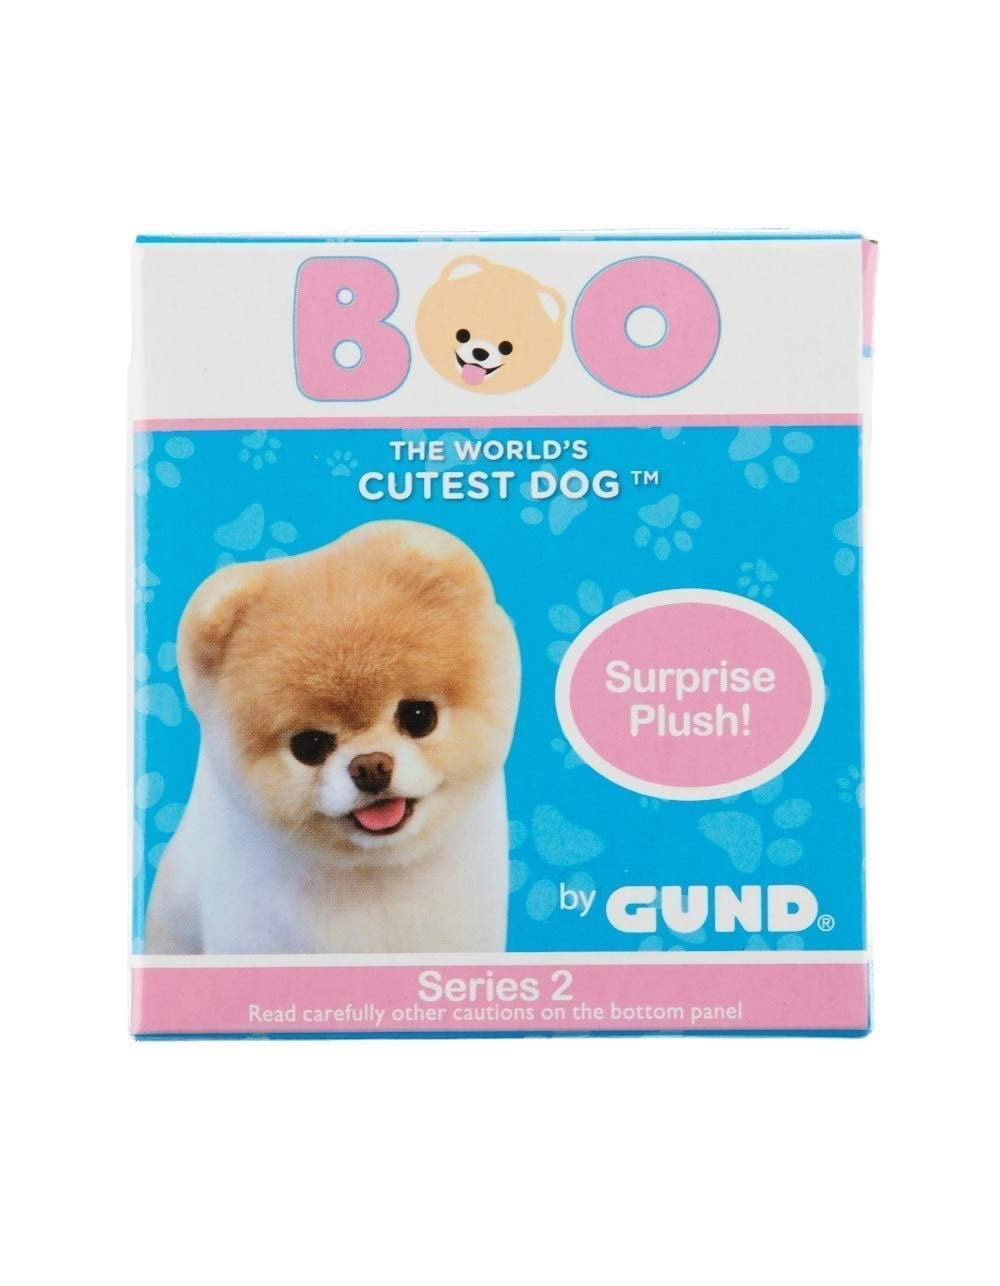 Details about   NeW BOO Worlds Cutest Dog GUND Surprise PLUSH Keychain Series 2 RaRe FOX